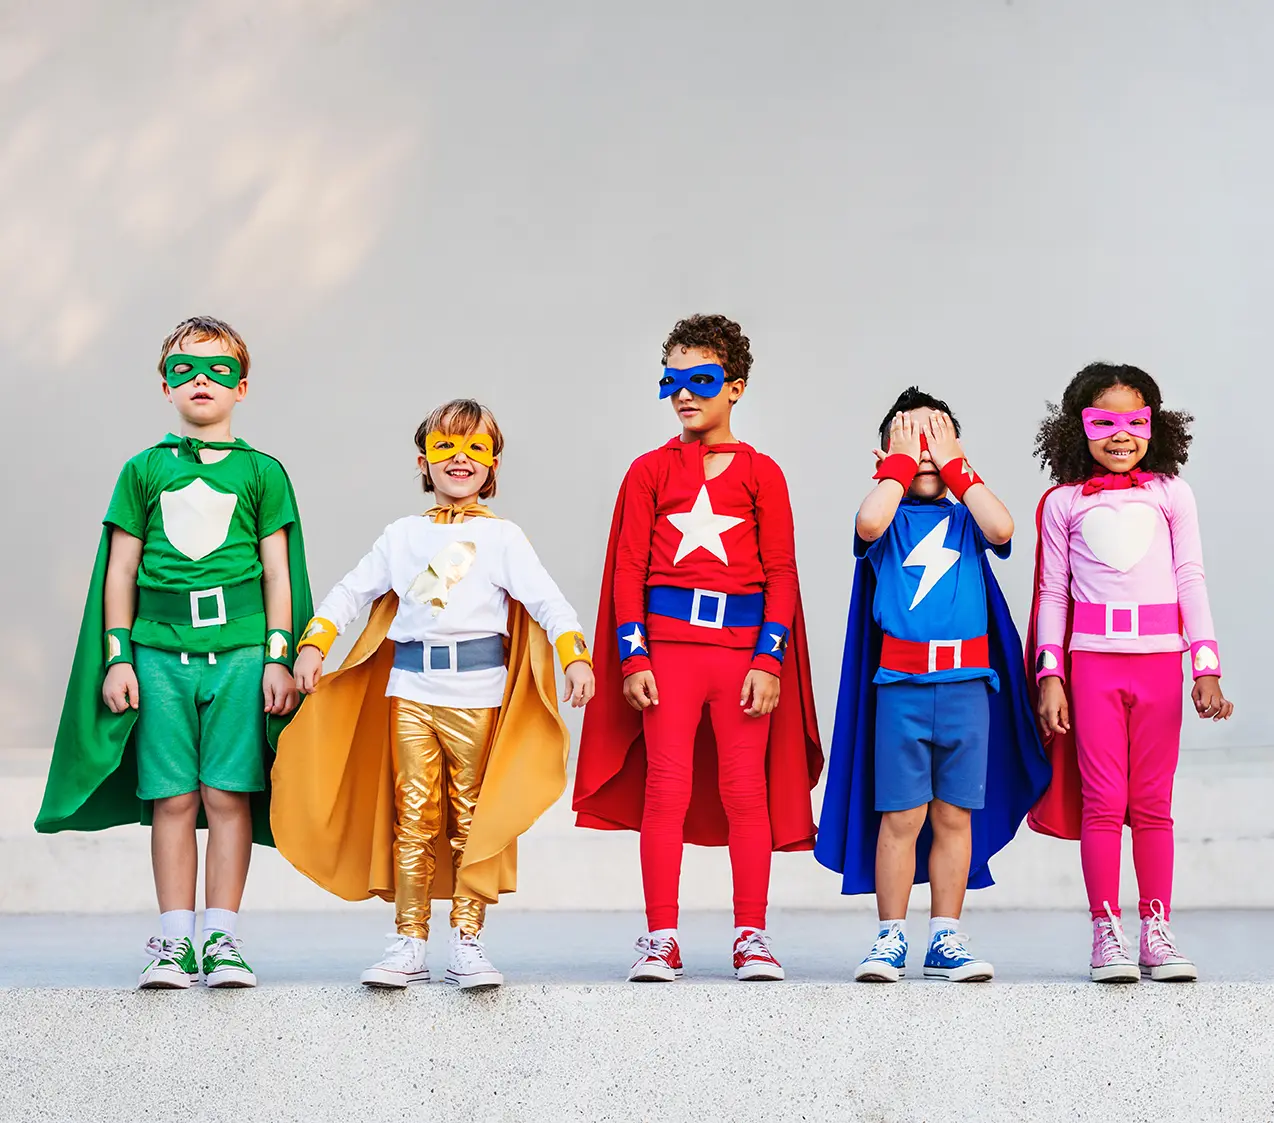 Varios niños y niñas disfrazados de super héroes representrando la formación de los niños en épocas de Iron Man